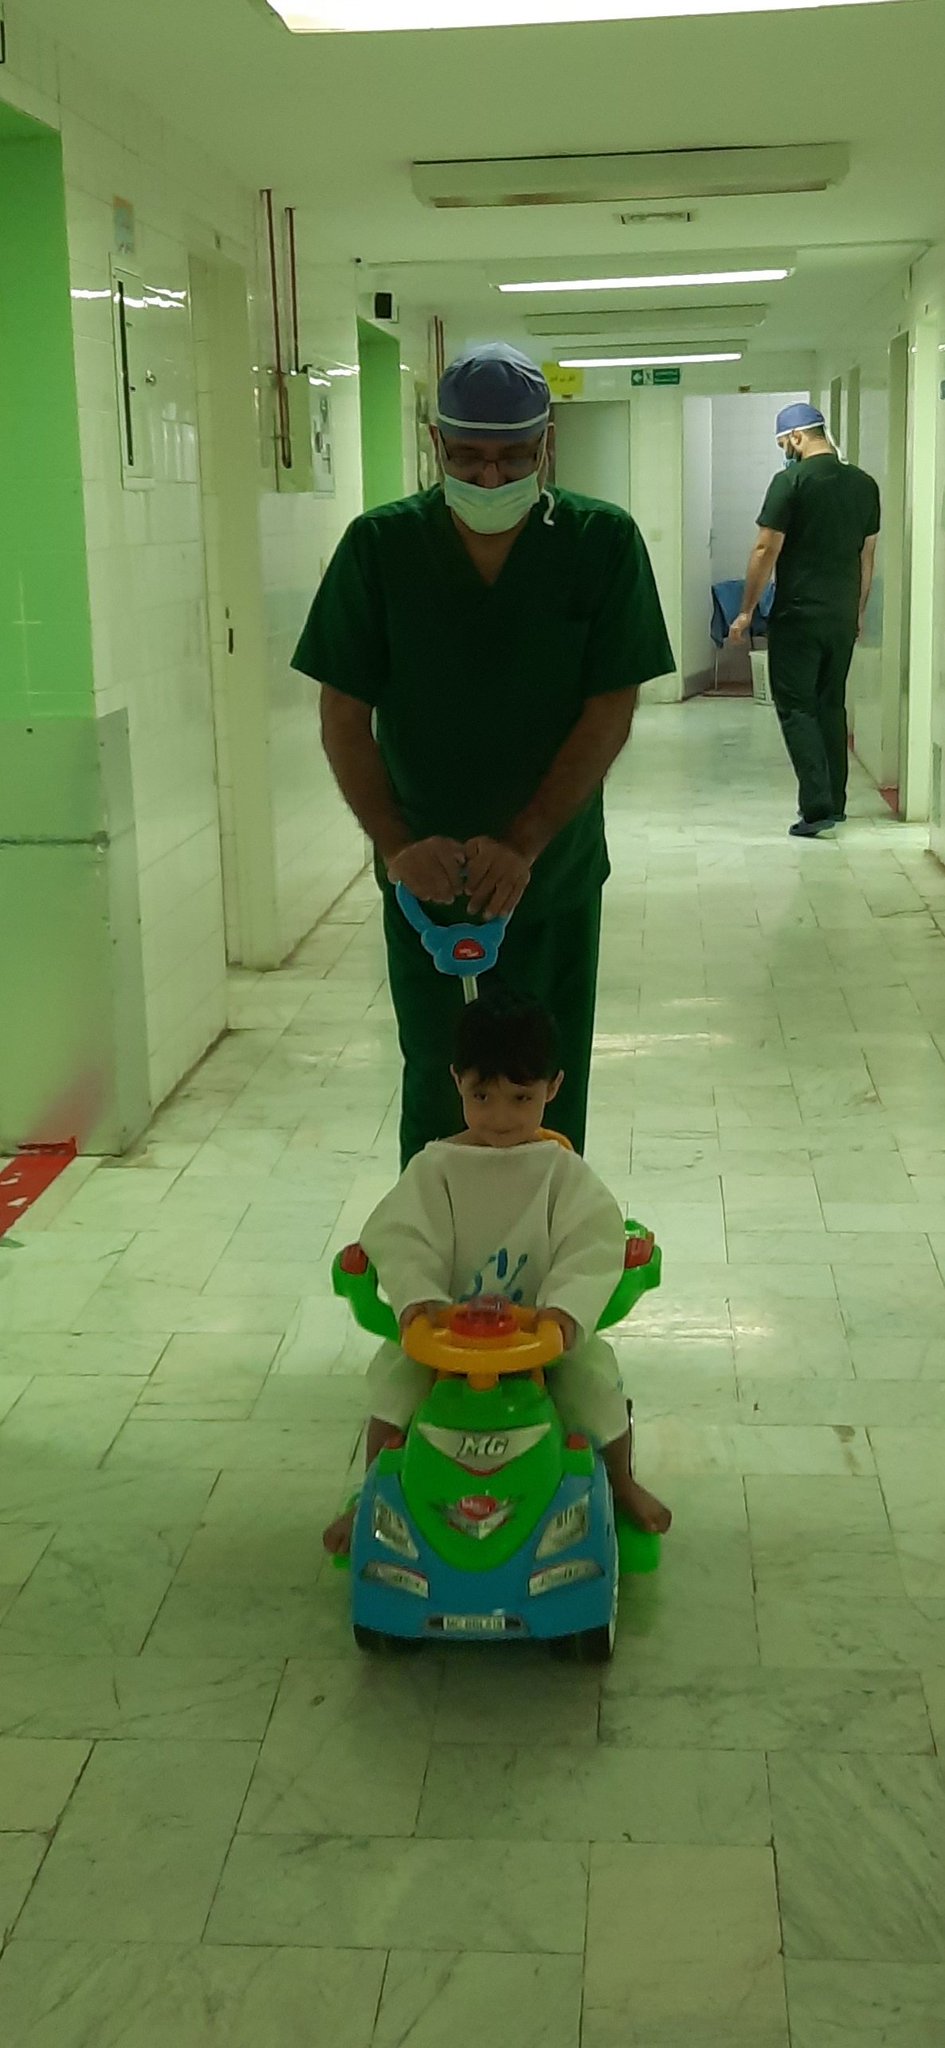 تصویر خوشحال کننده از کودک تهرانی قبل از عمل جراحی +عکس